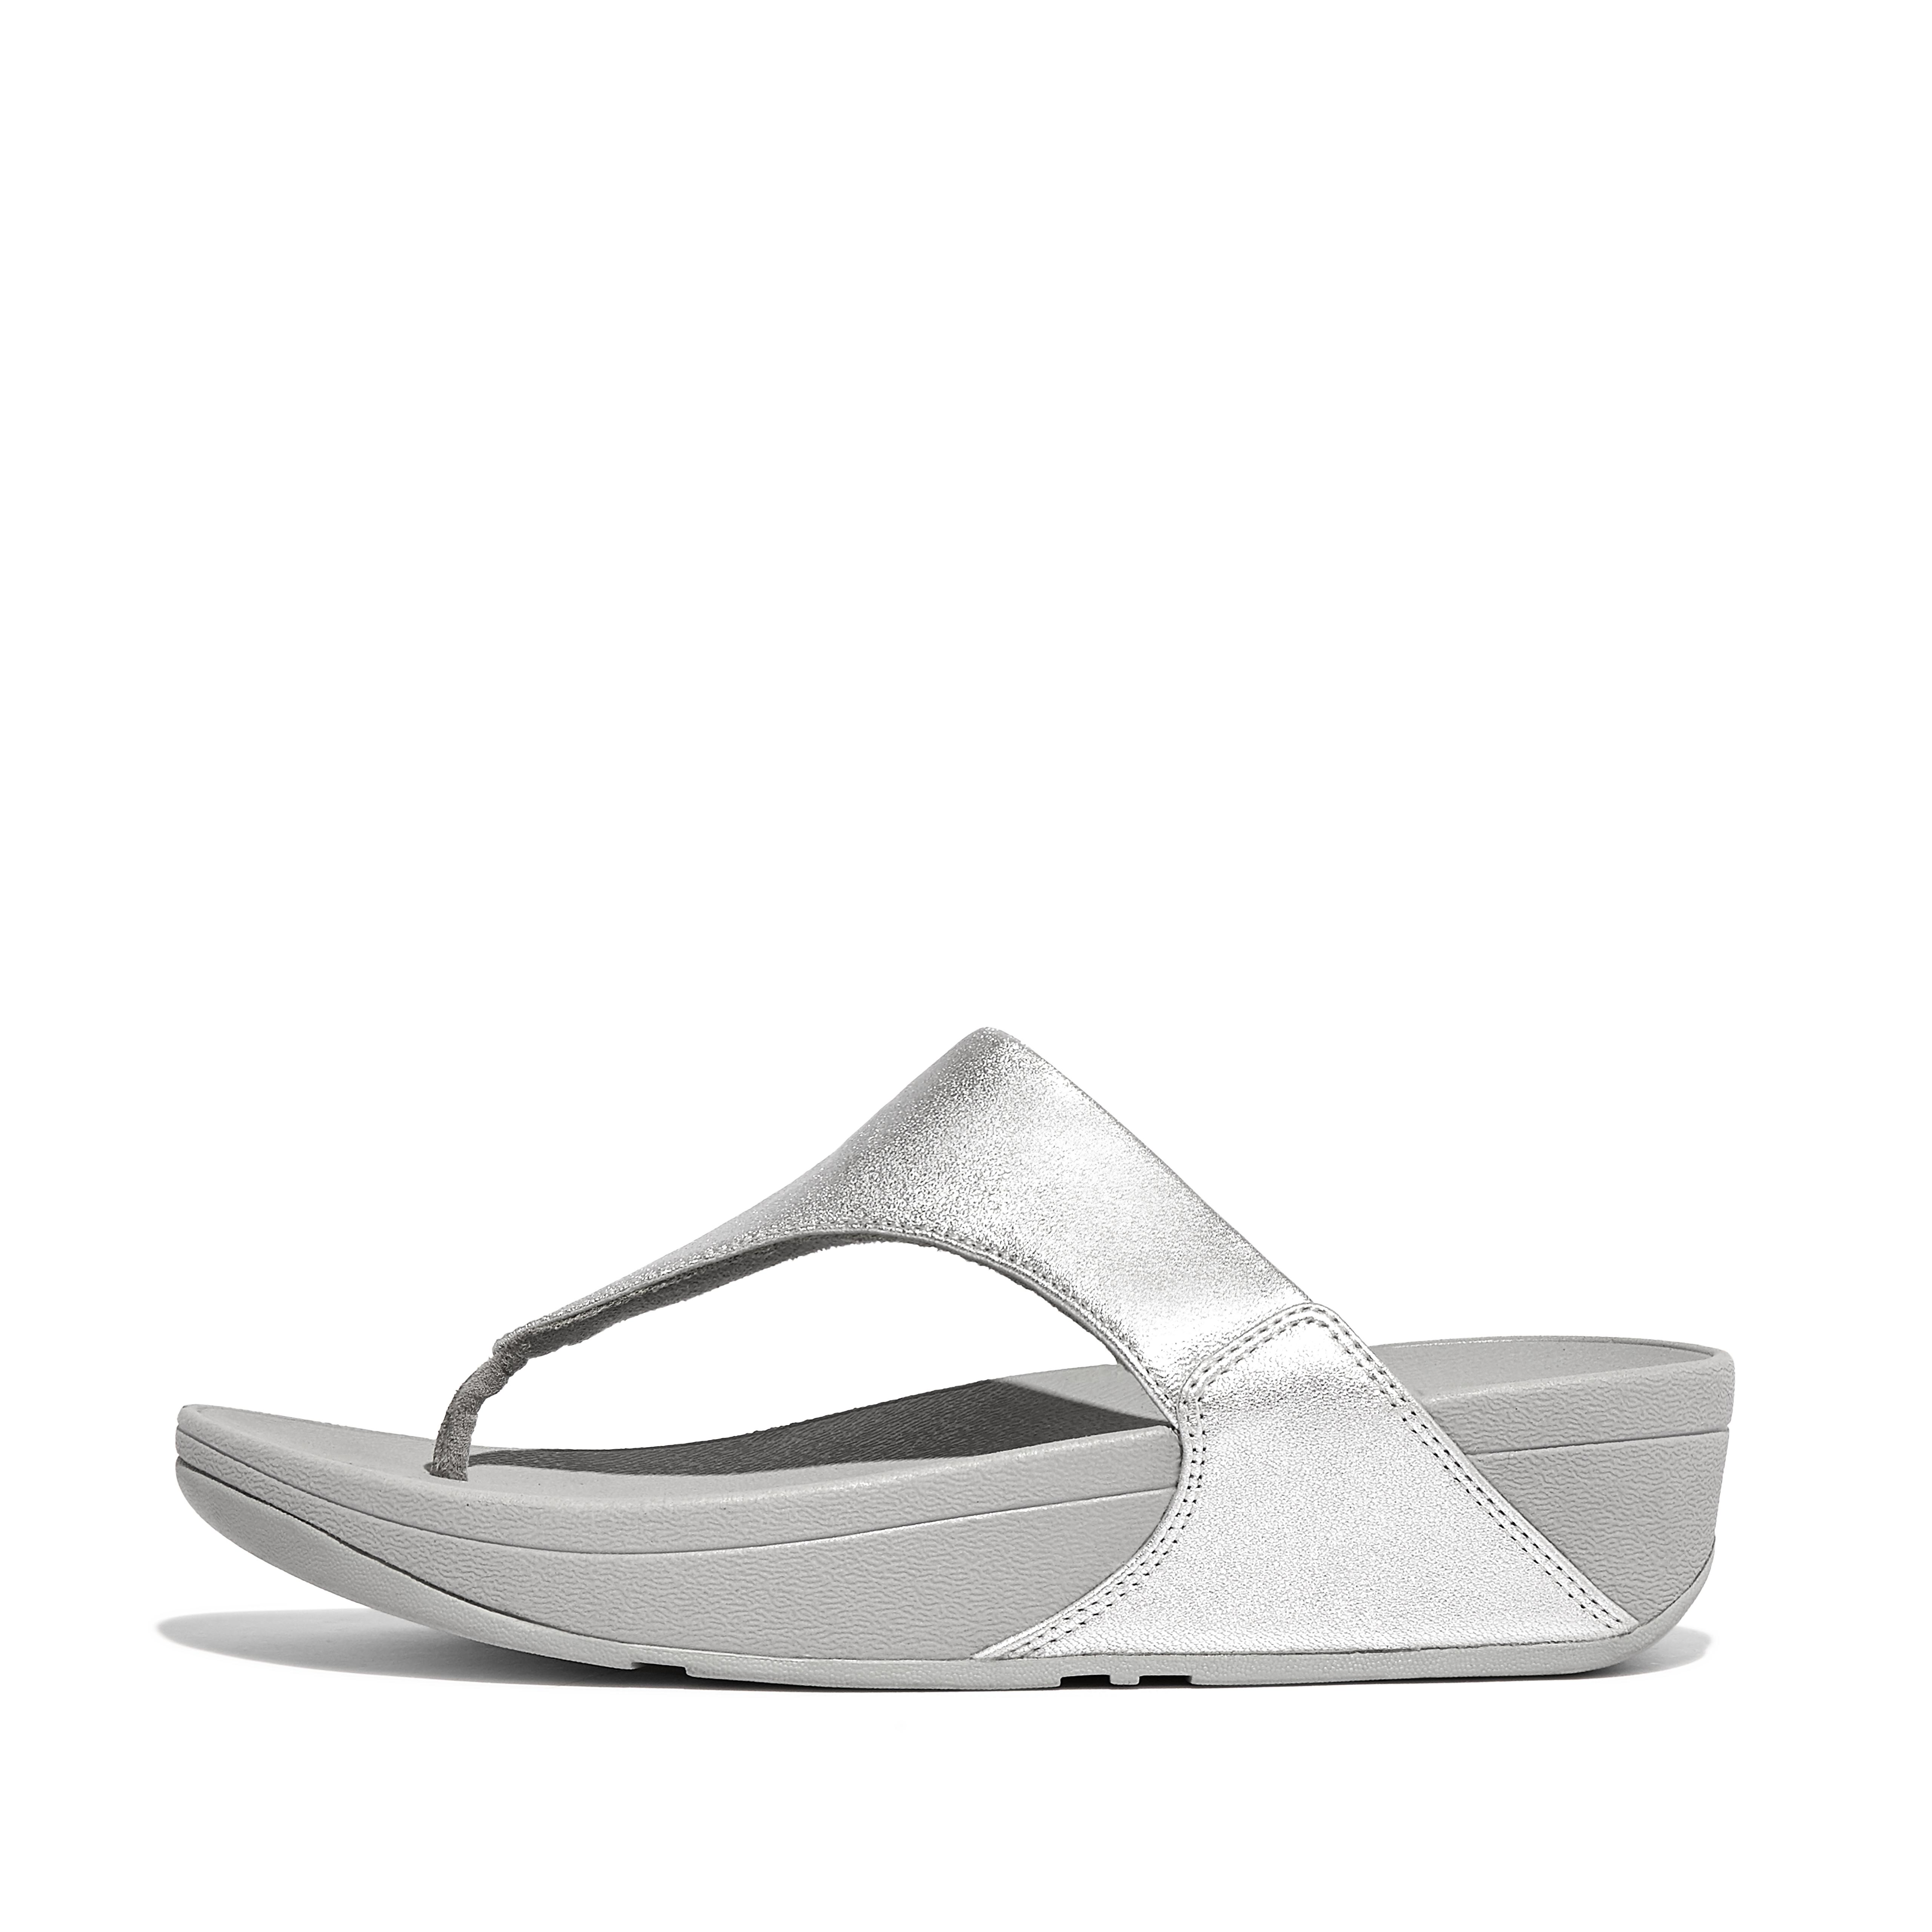 핏플랍 샌들 Fitflop Leather Toe-Post Sandals,Silver